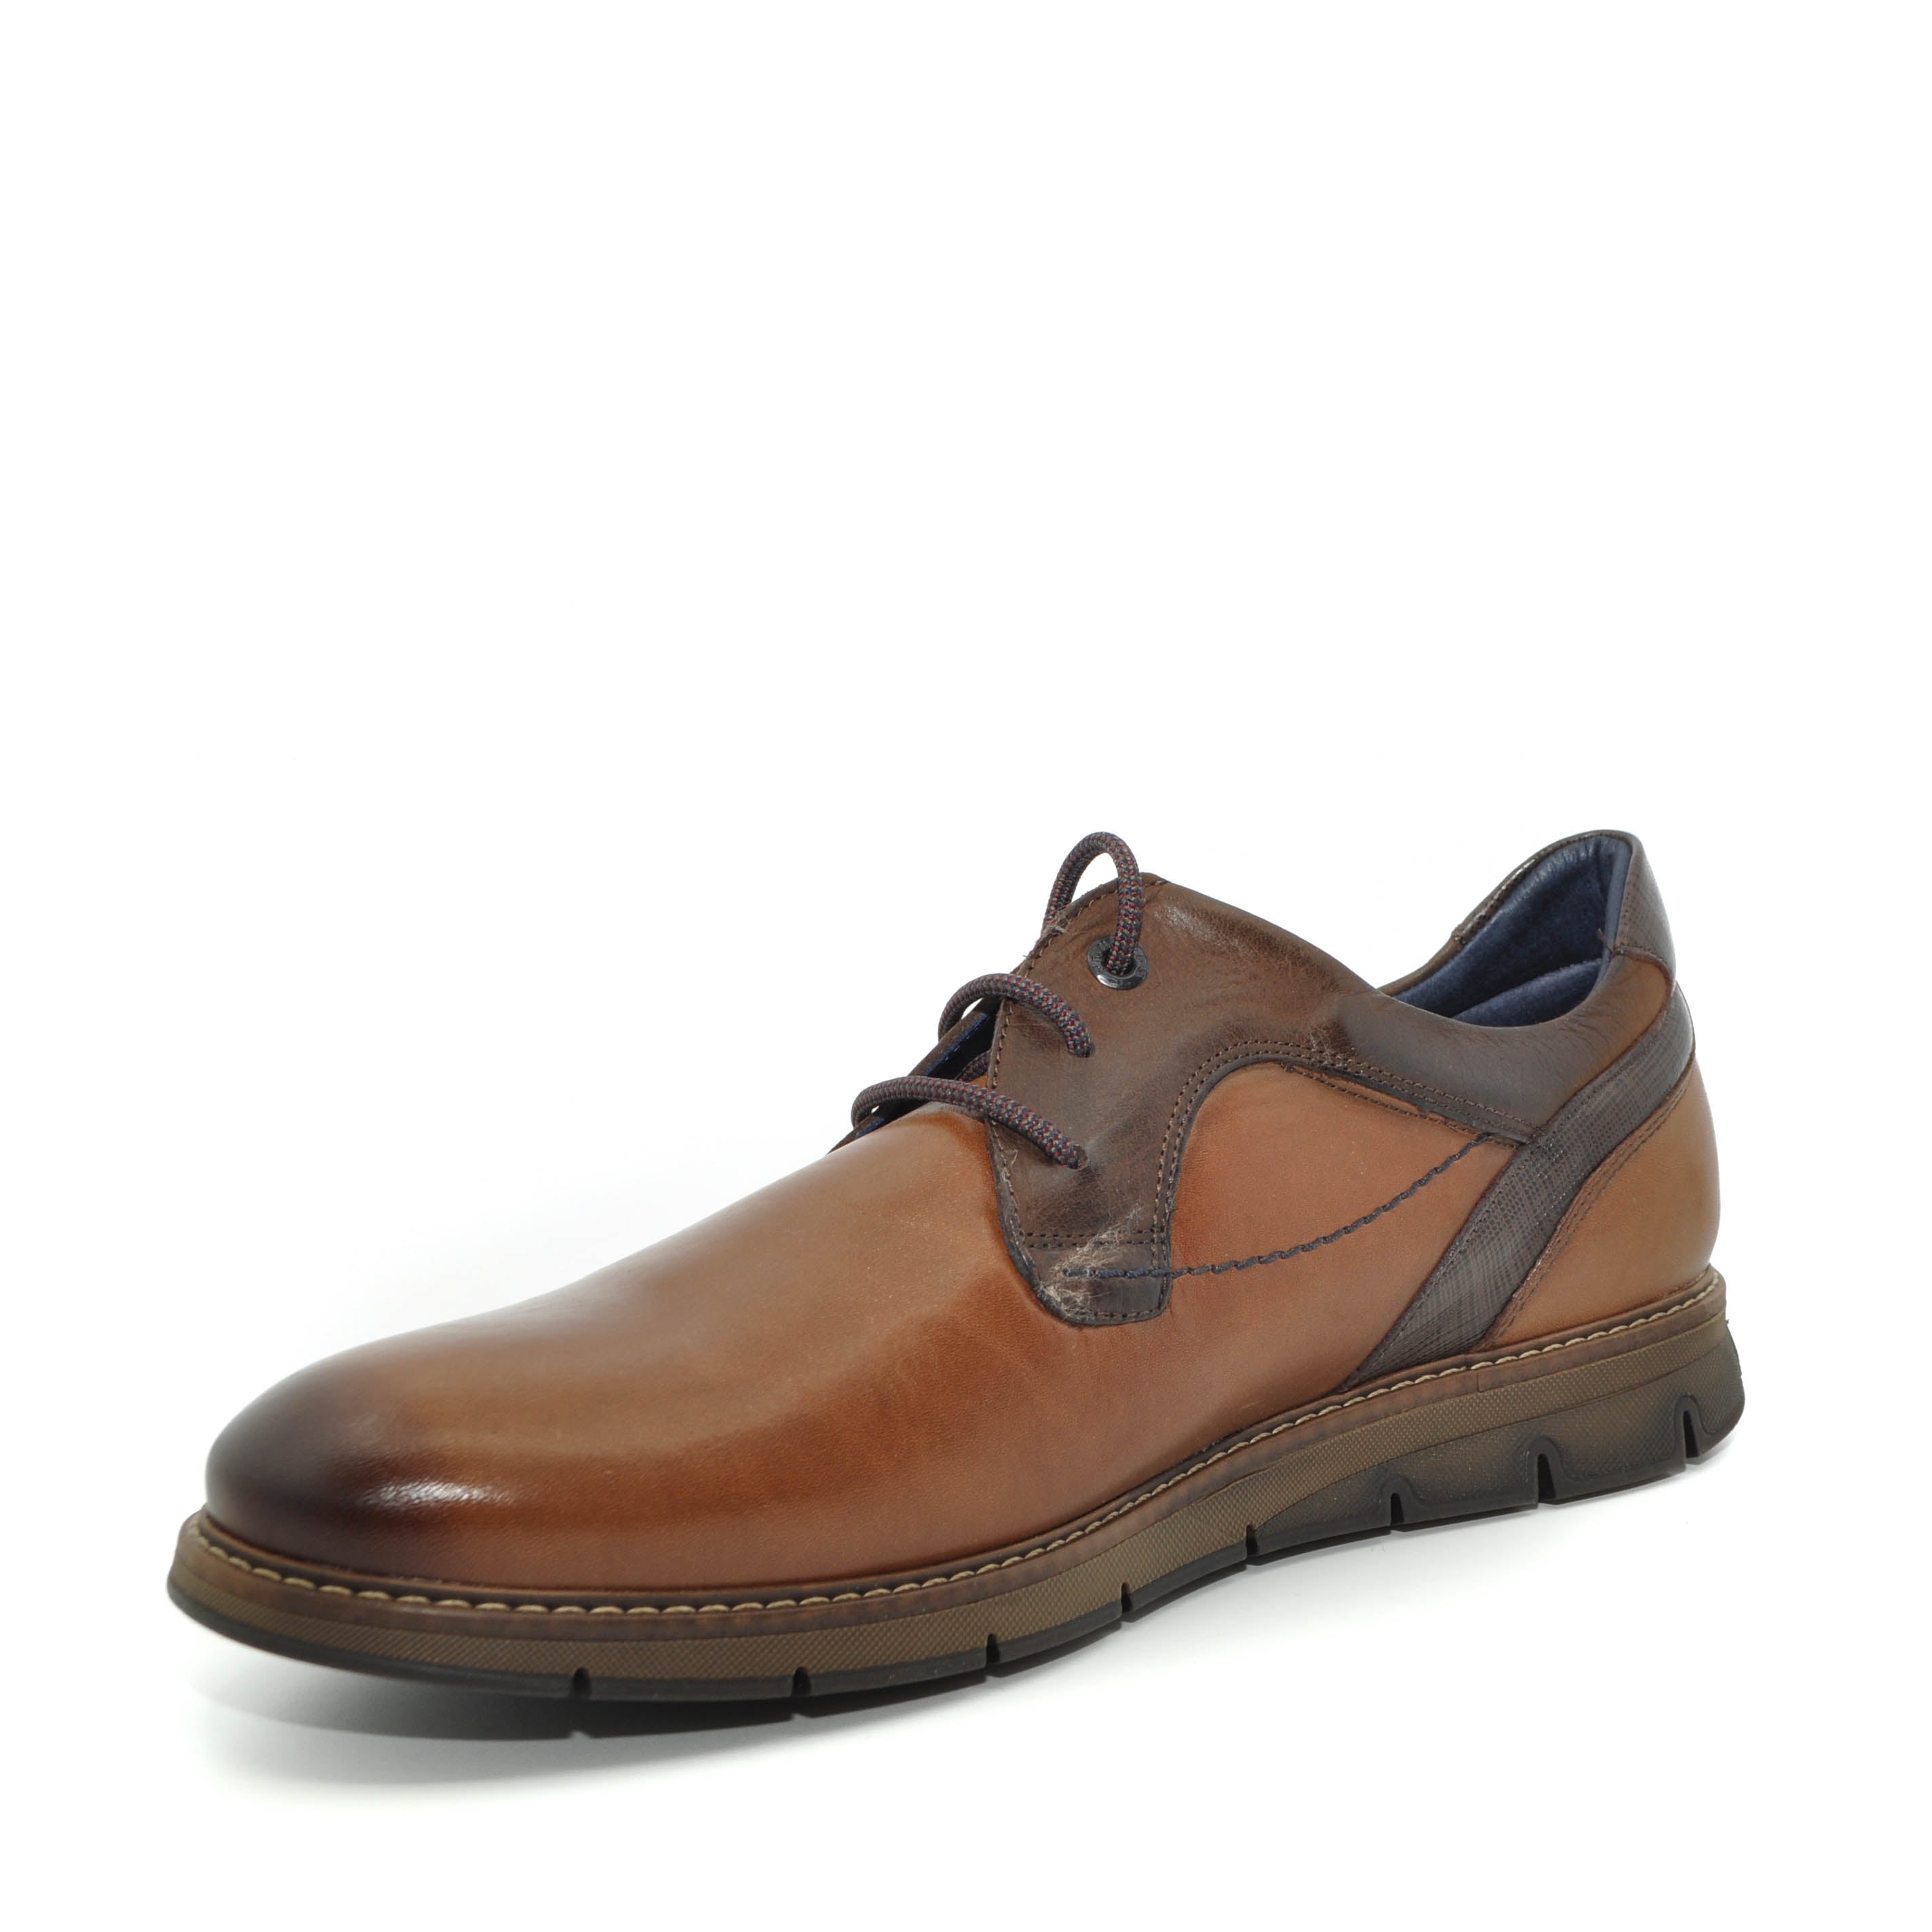 casual shoes for men | fluchos online ireland mens shoes